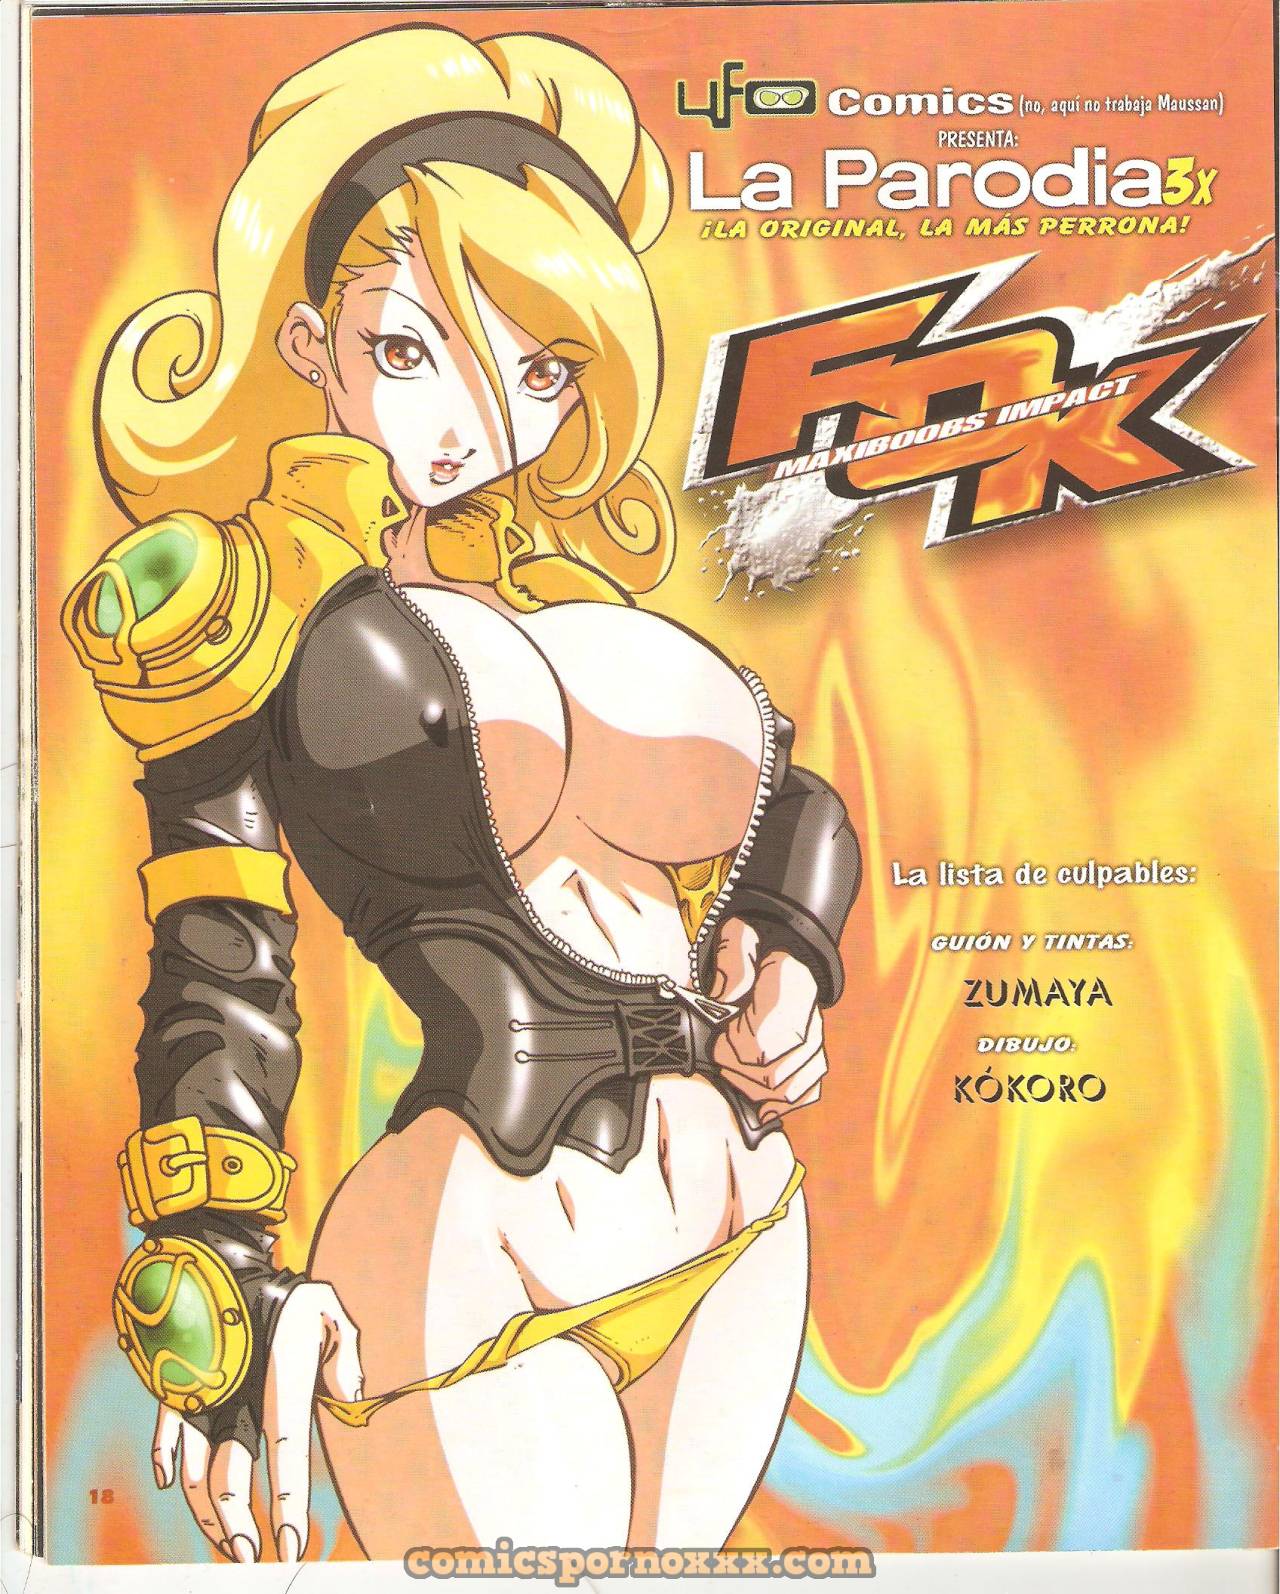 FOK Maxiboobs Impact (Parodias 3X) - 1 - Comics Porno - Hentai Manga - Cartoon XXX